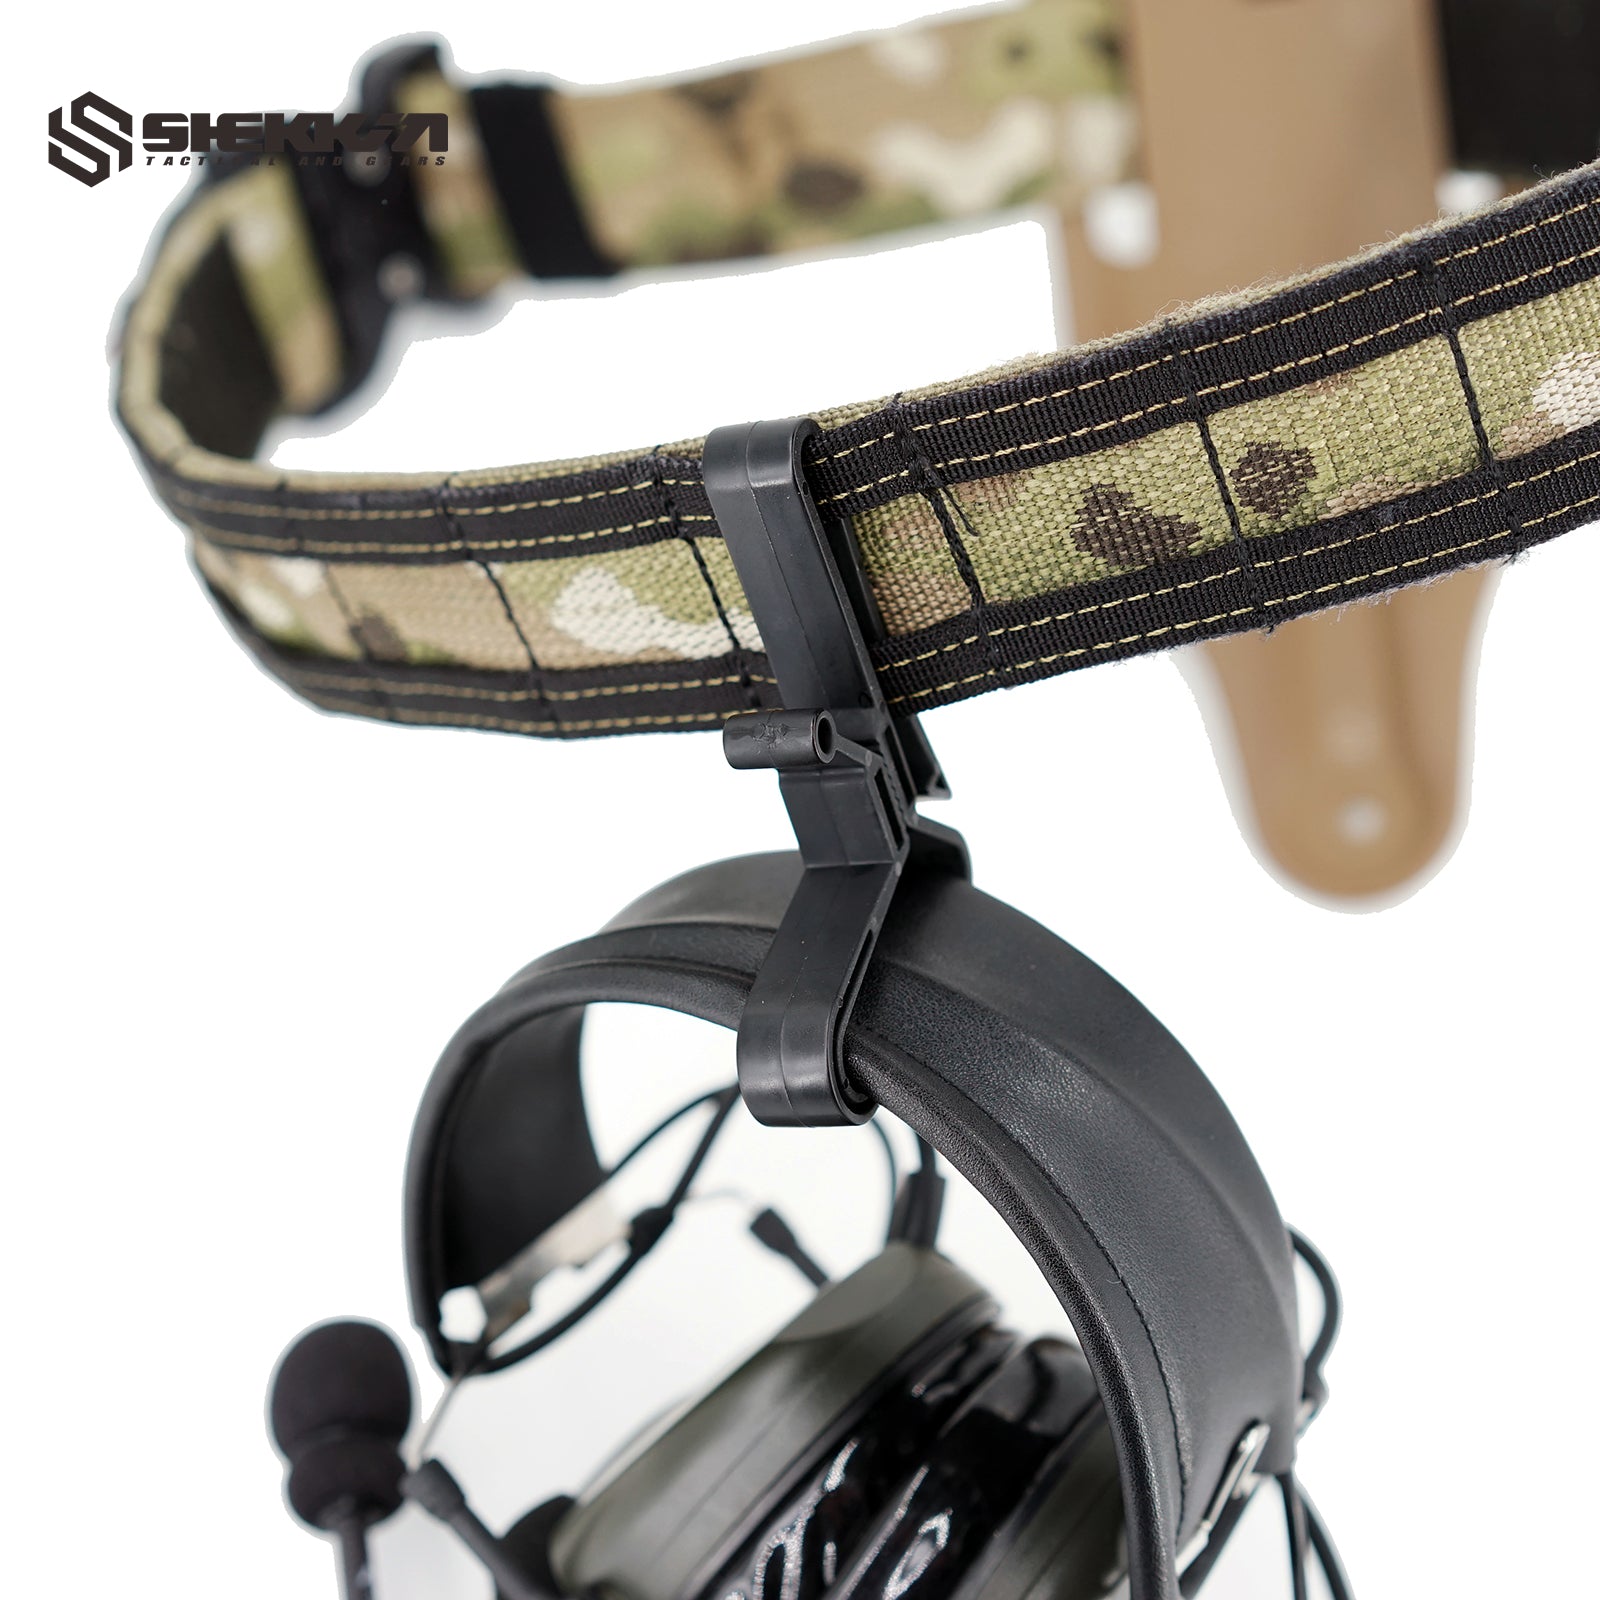 Shekkin Gears Ear Protection Belt Hook - Shekkin Gears